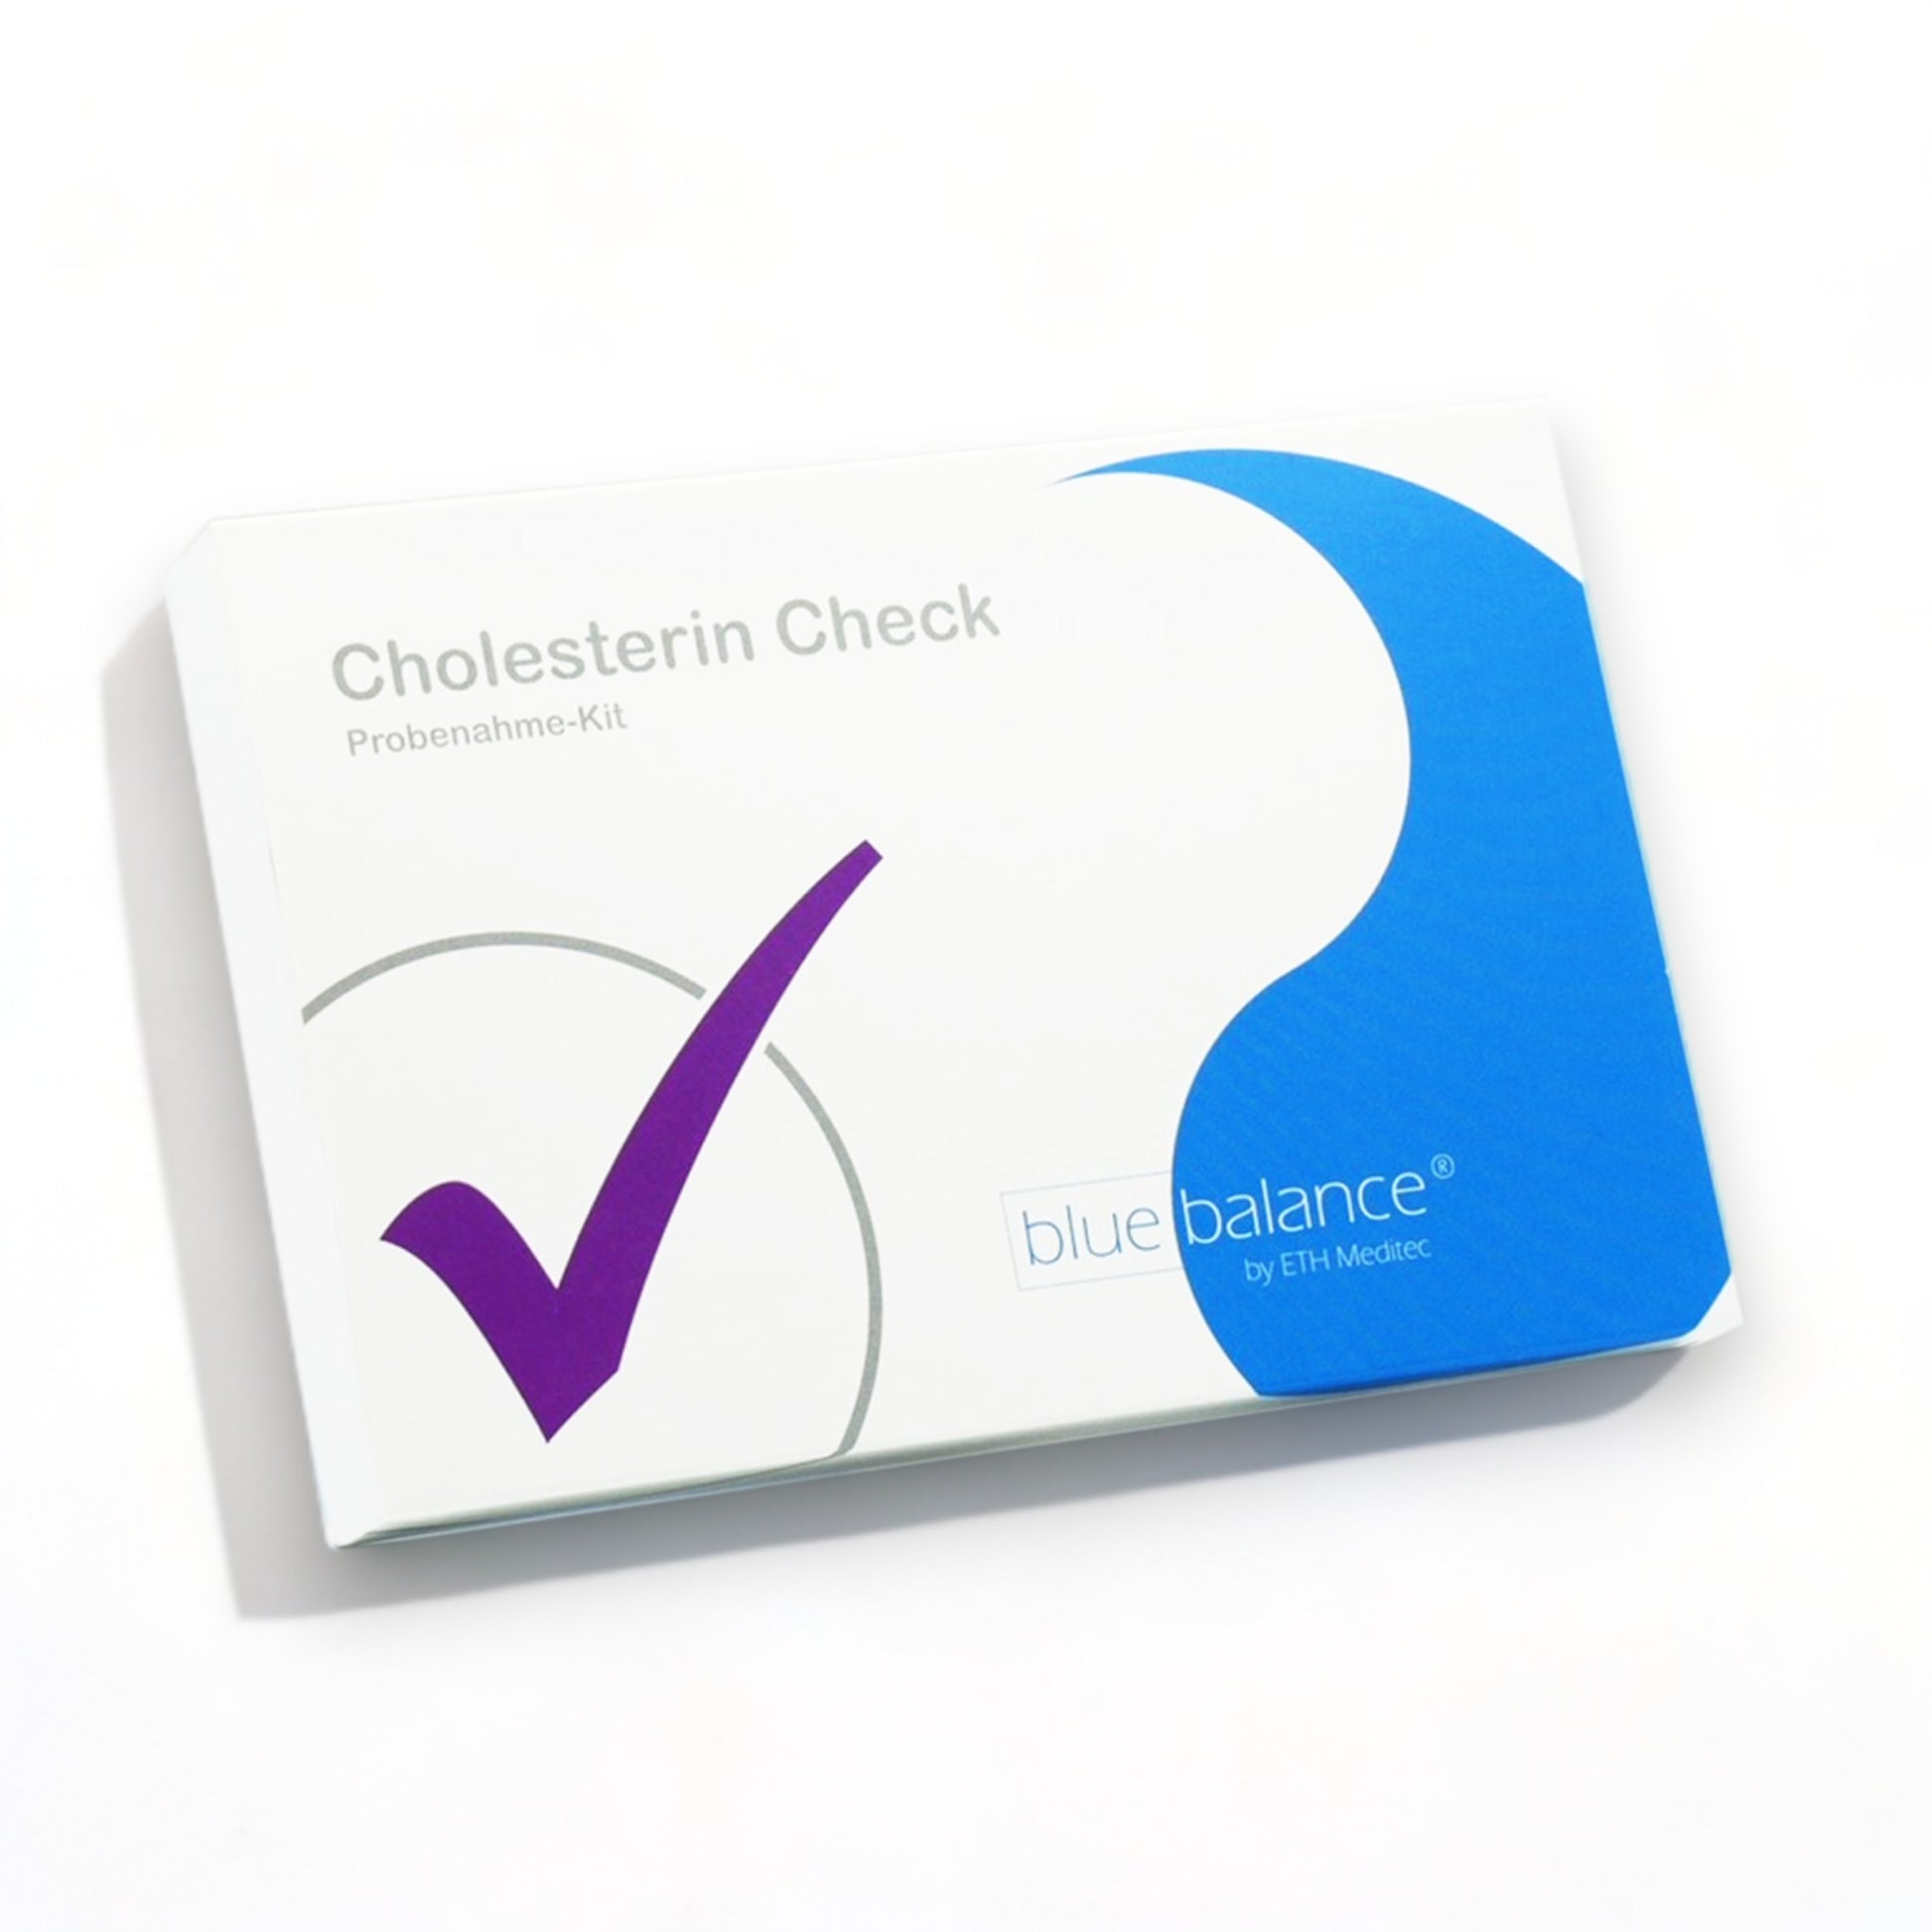 Cholesterin-Selbsttest von blue balance angezeigt auf weißem Grund." Beschreibung: "Hier ist der blue balance Cholesterintest zu sehen, platziert auf einem reinen weißen Hintergrund, der das Kit klar hervorhebt, unterstützt von der professionellen Glaubwürdigkeit von ETH Meditec.